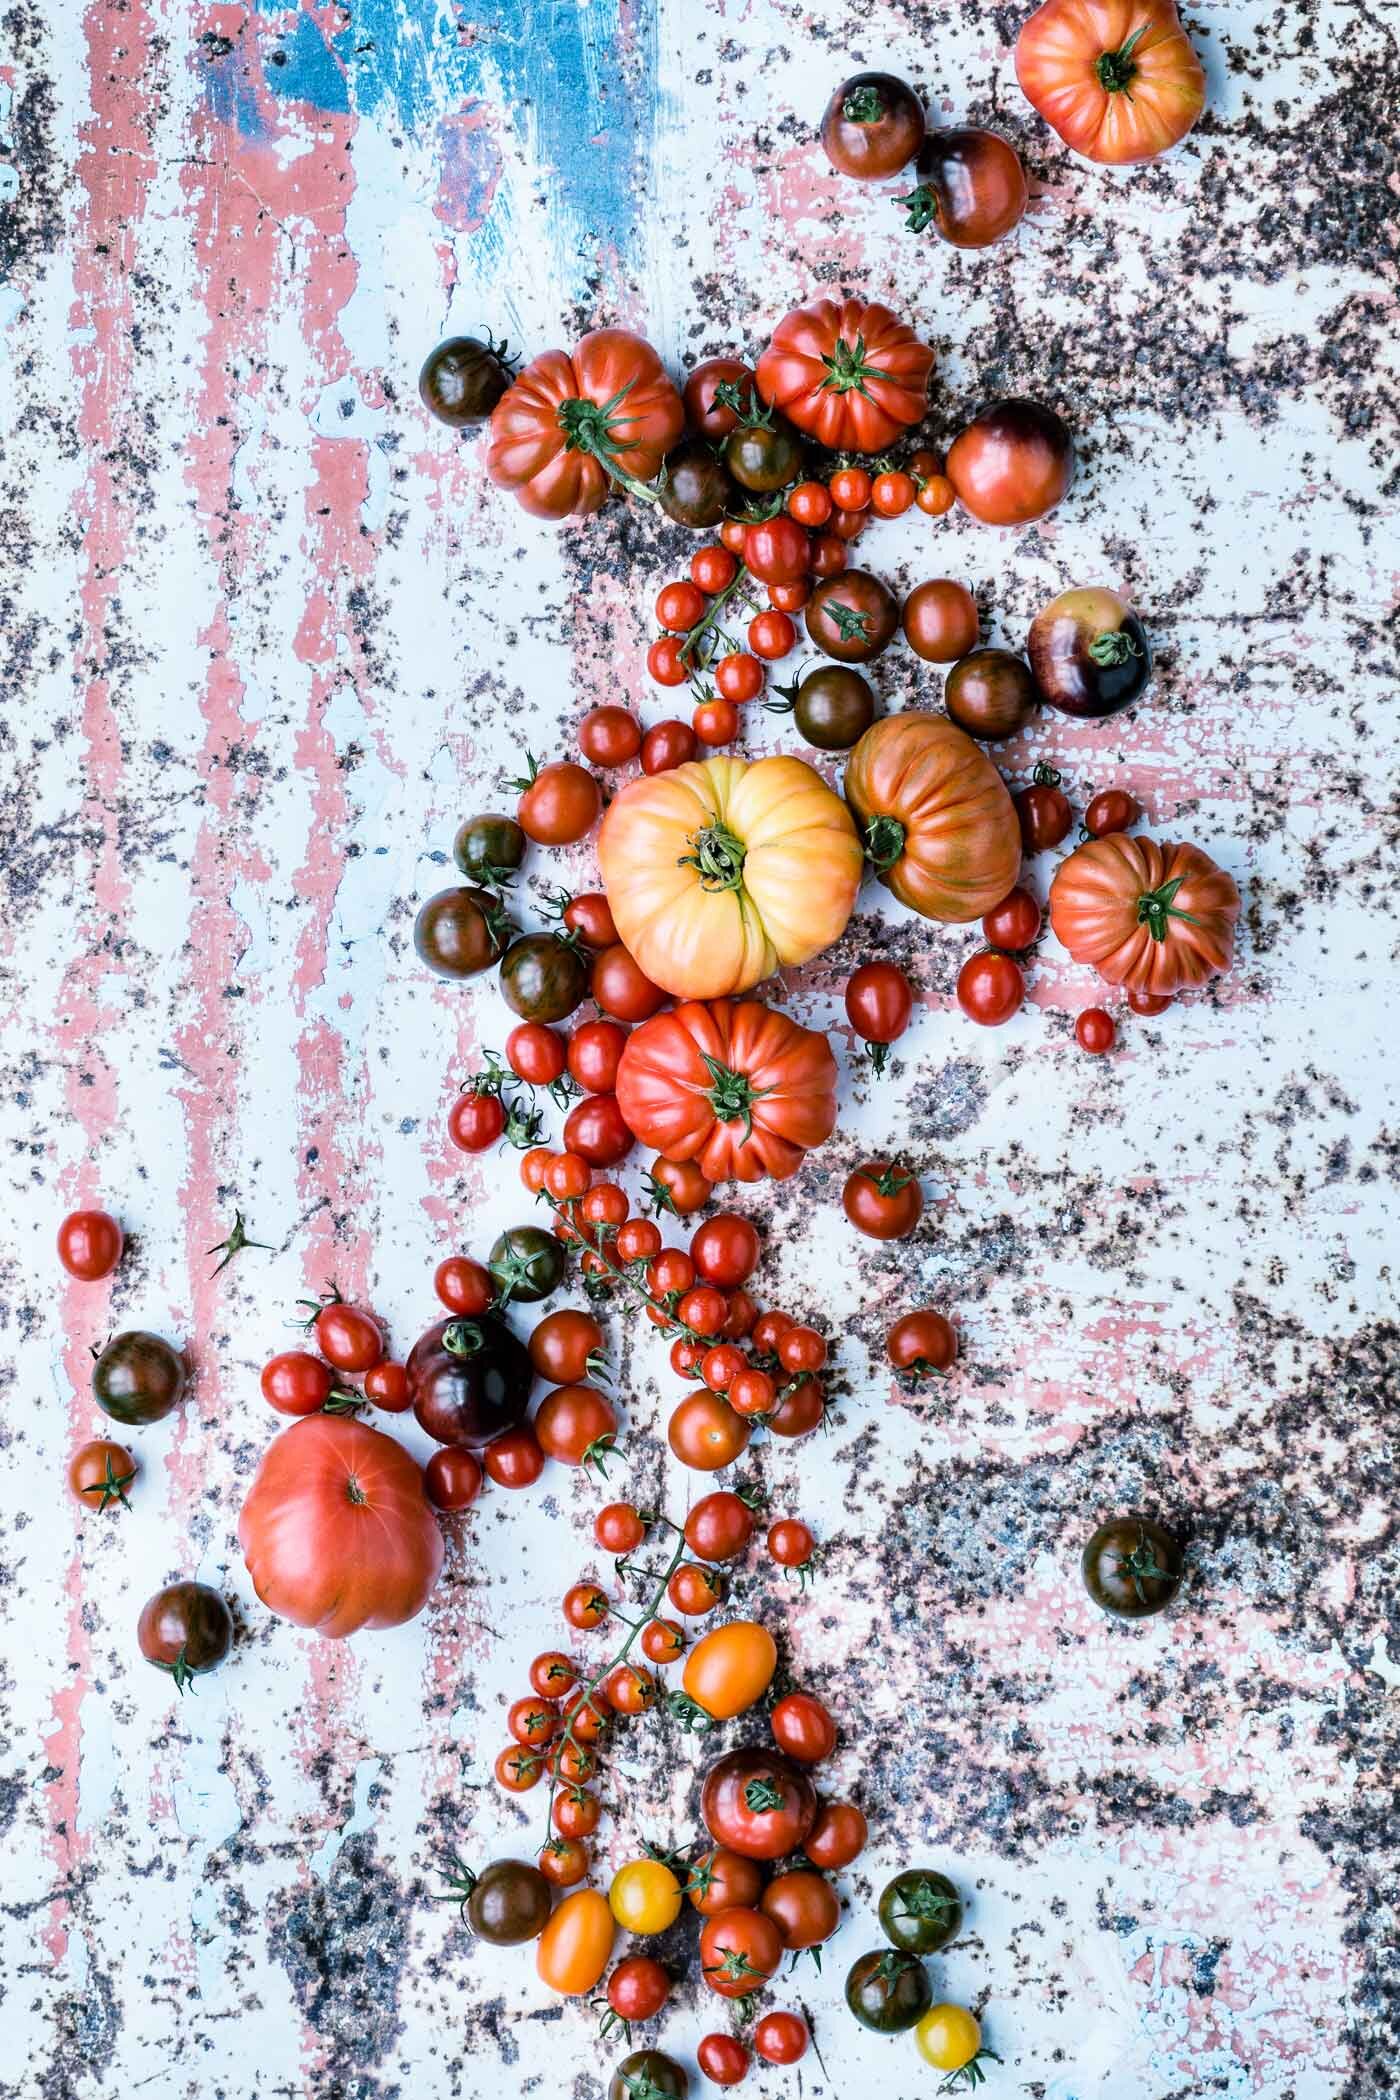 tomatenvielfalt-tomaten-stilleben-veggielicious-food-fotografie-02-dt-hoch.jpg